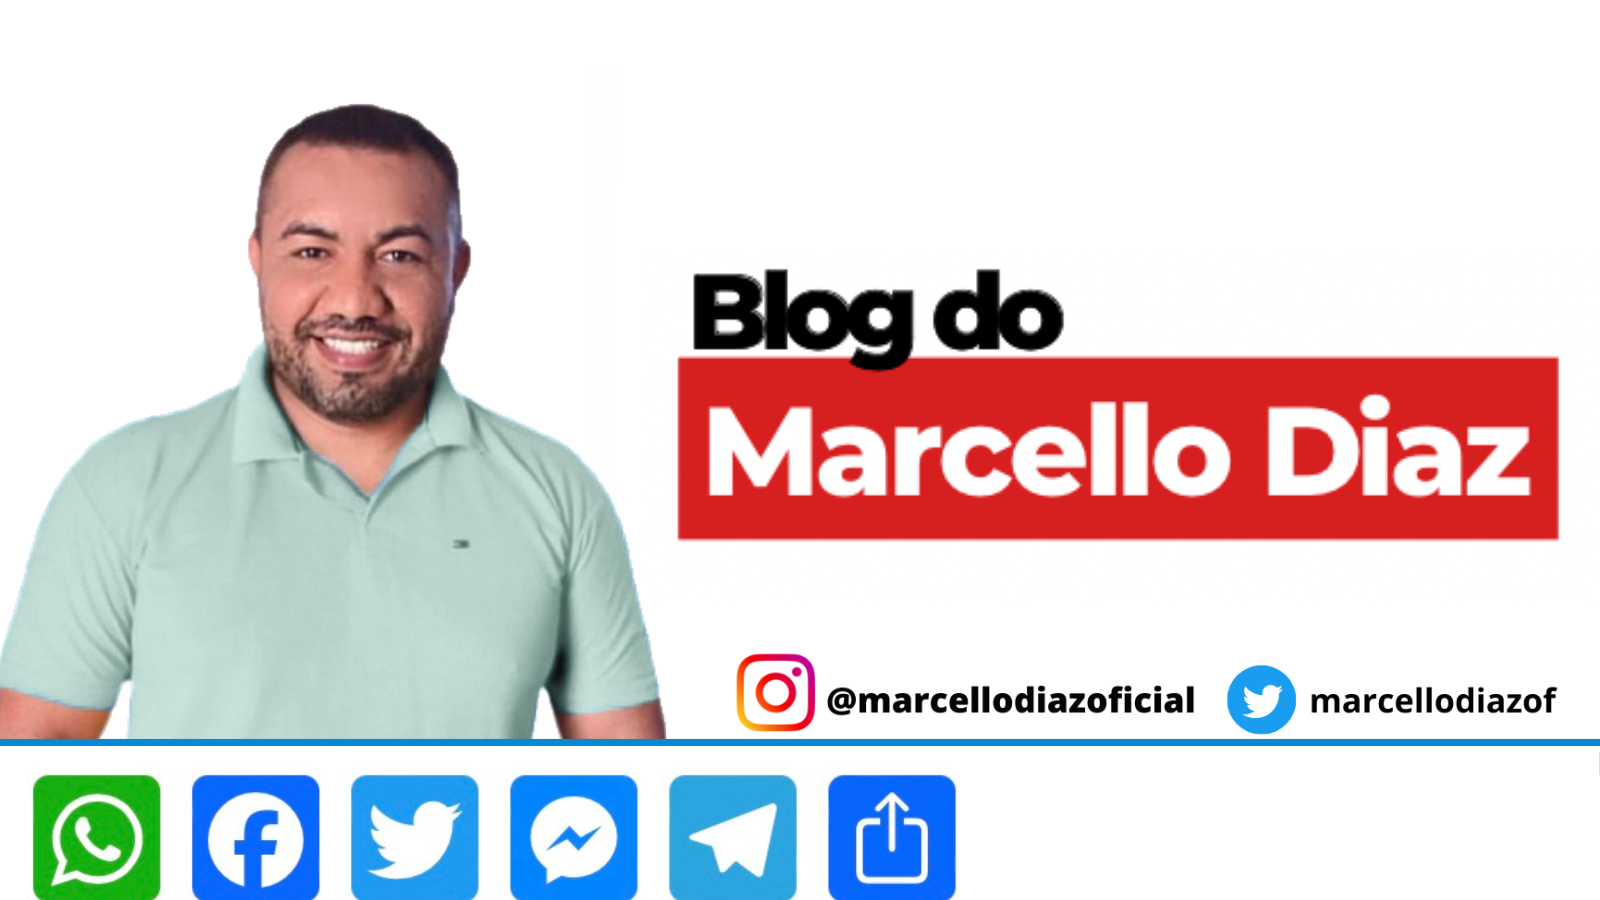 Blog do Marcello Diaz